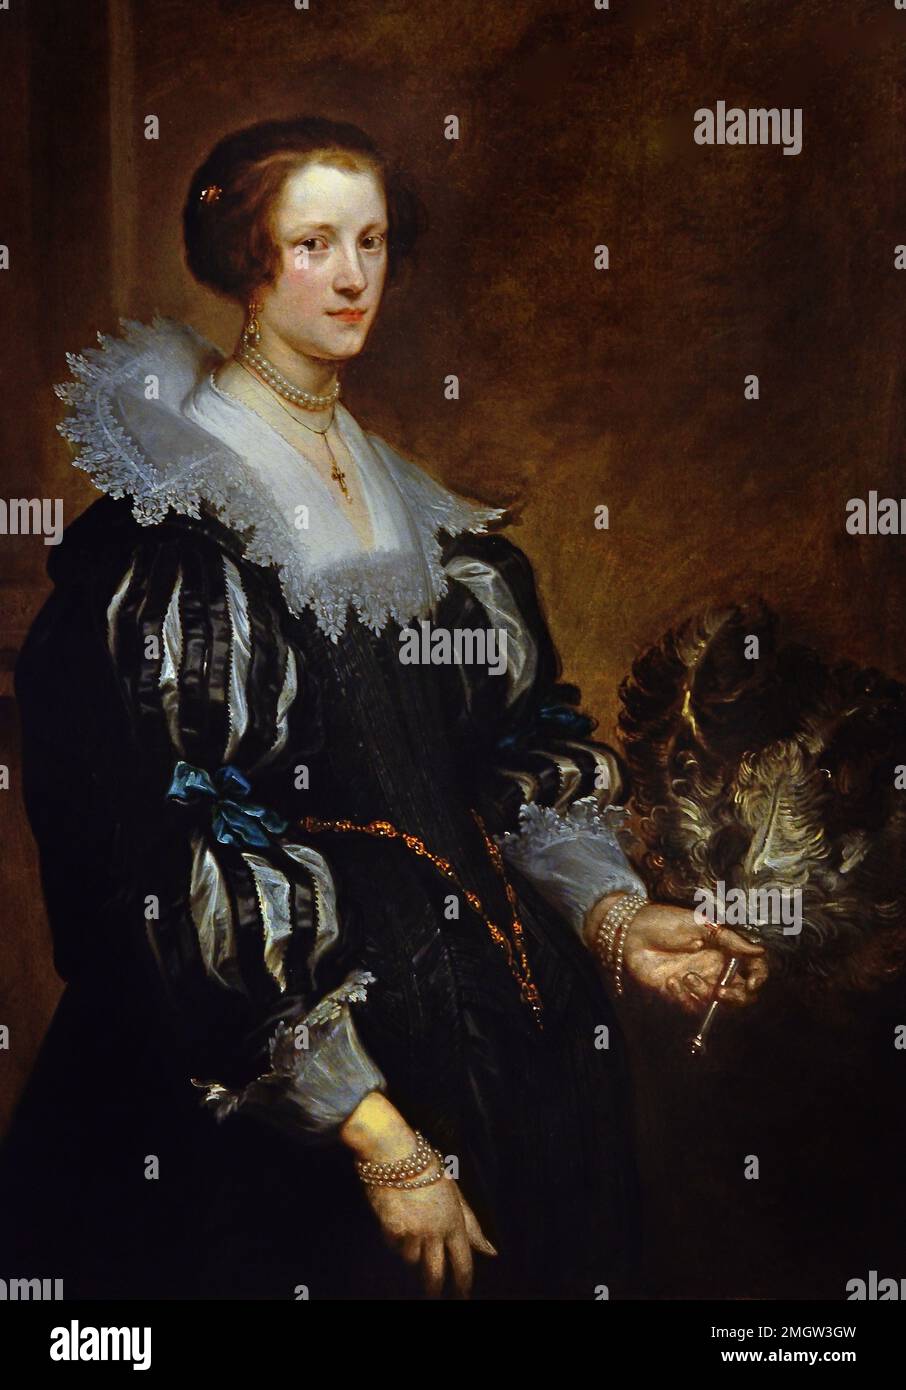 Porträt von Anna Wake 1628 von Anthony Antoon Anton van Dyck 1599-1641 Flämisch Belgien Belgien Belgien Stockfoto